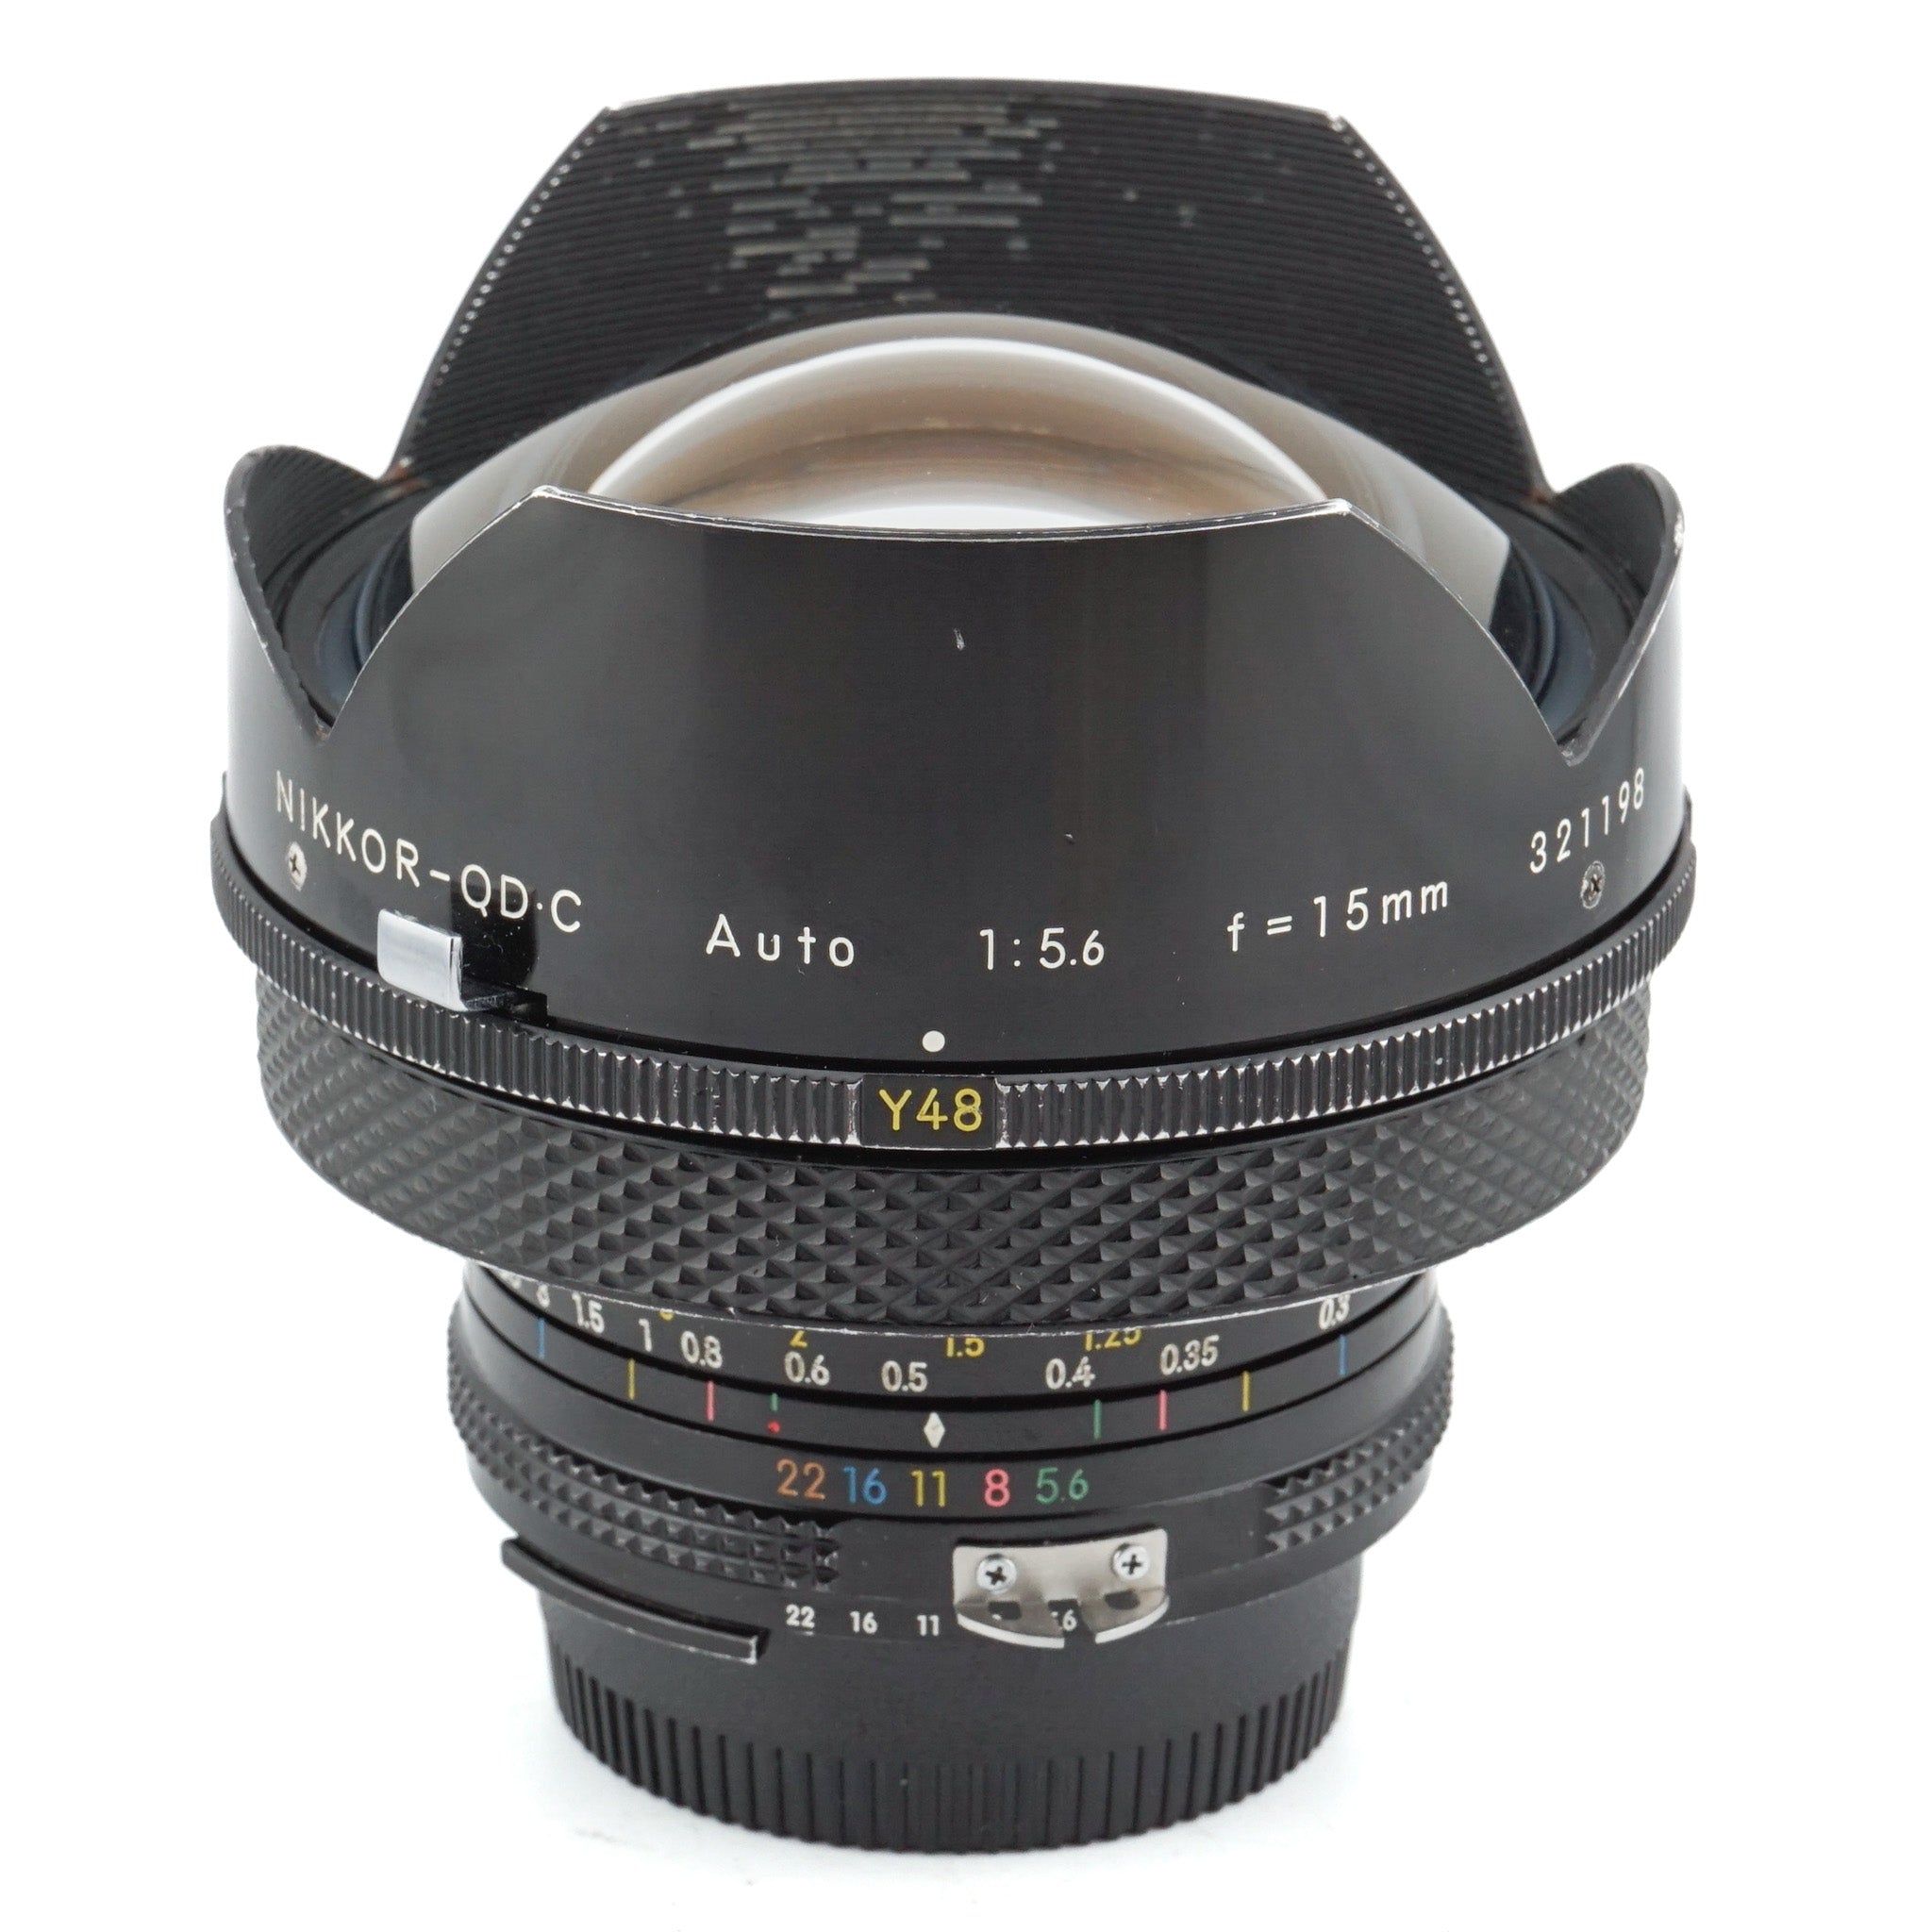 Nikon 15mm f5.6 Nikkor-QD.C Auto AI'd - Lens